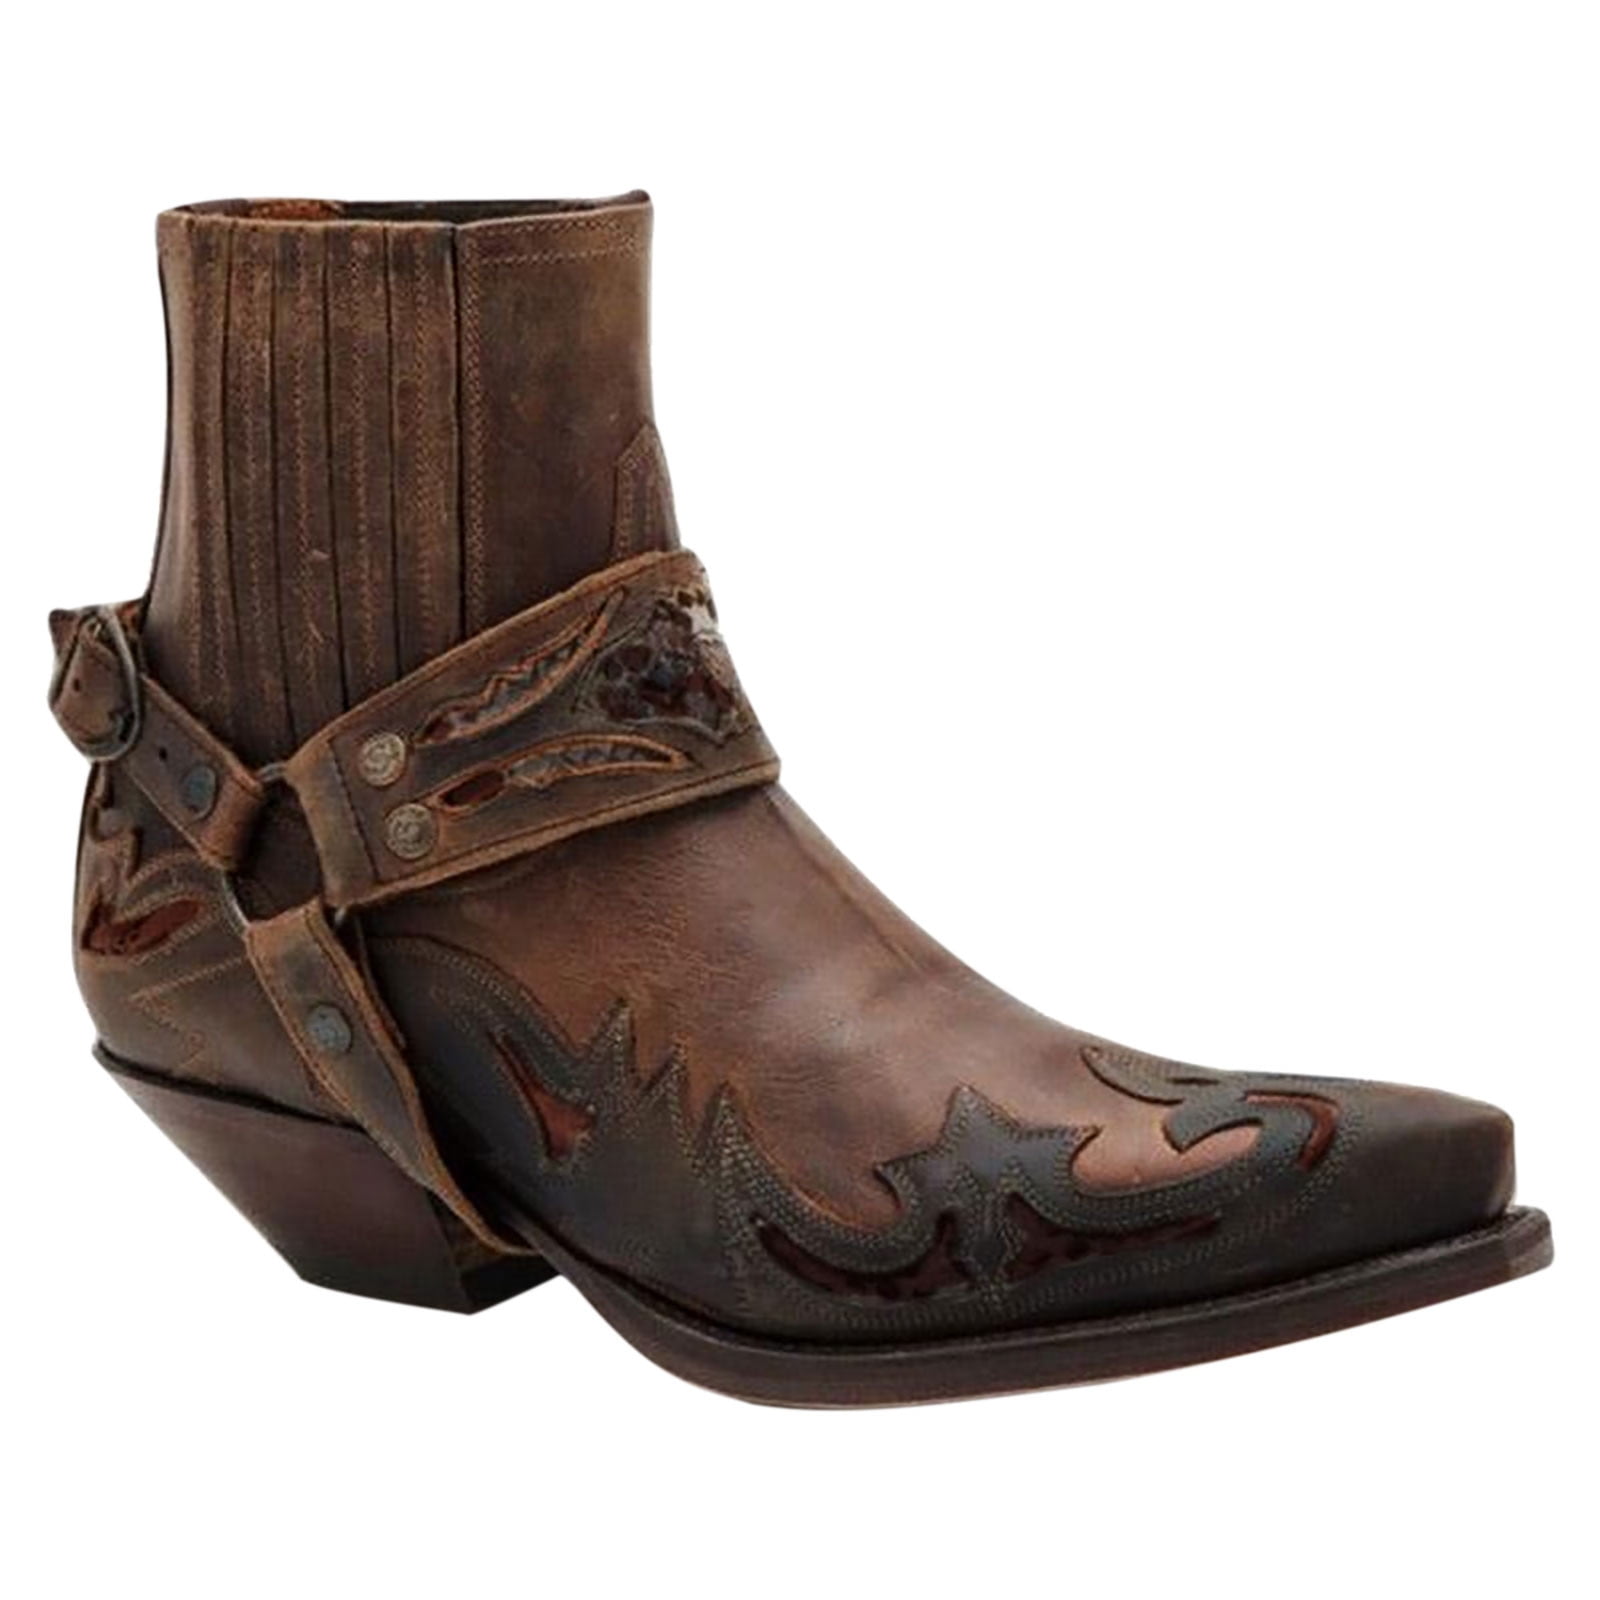 Chelsea Boots Men Leather, Men's Leather Boot, Cowboy Boots Men